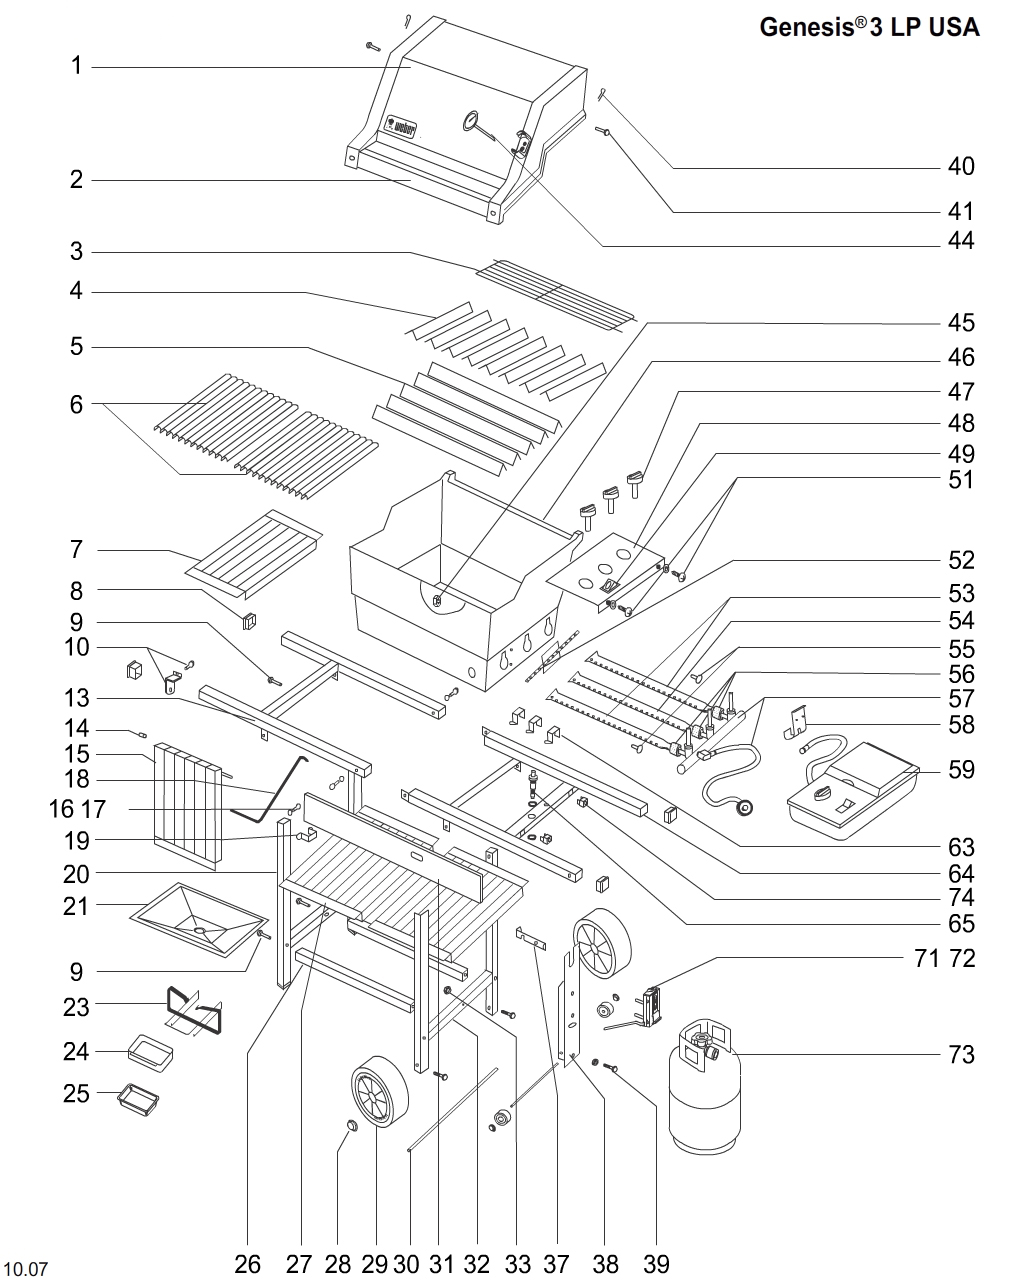 Weber Genesis Special Edition Parts Diagram - My Bios